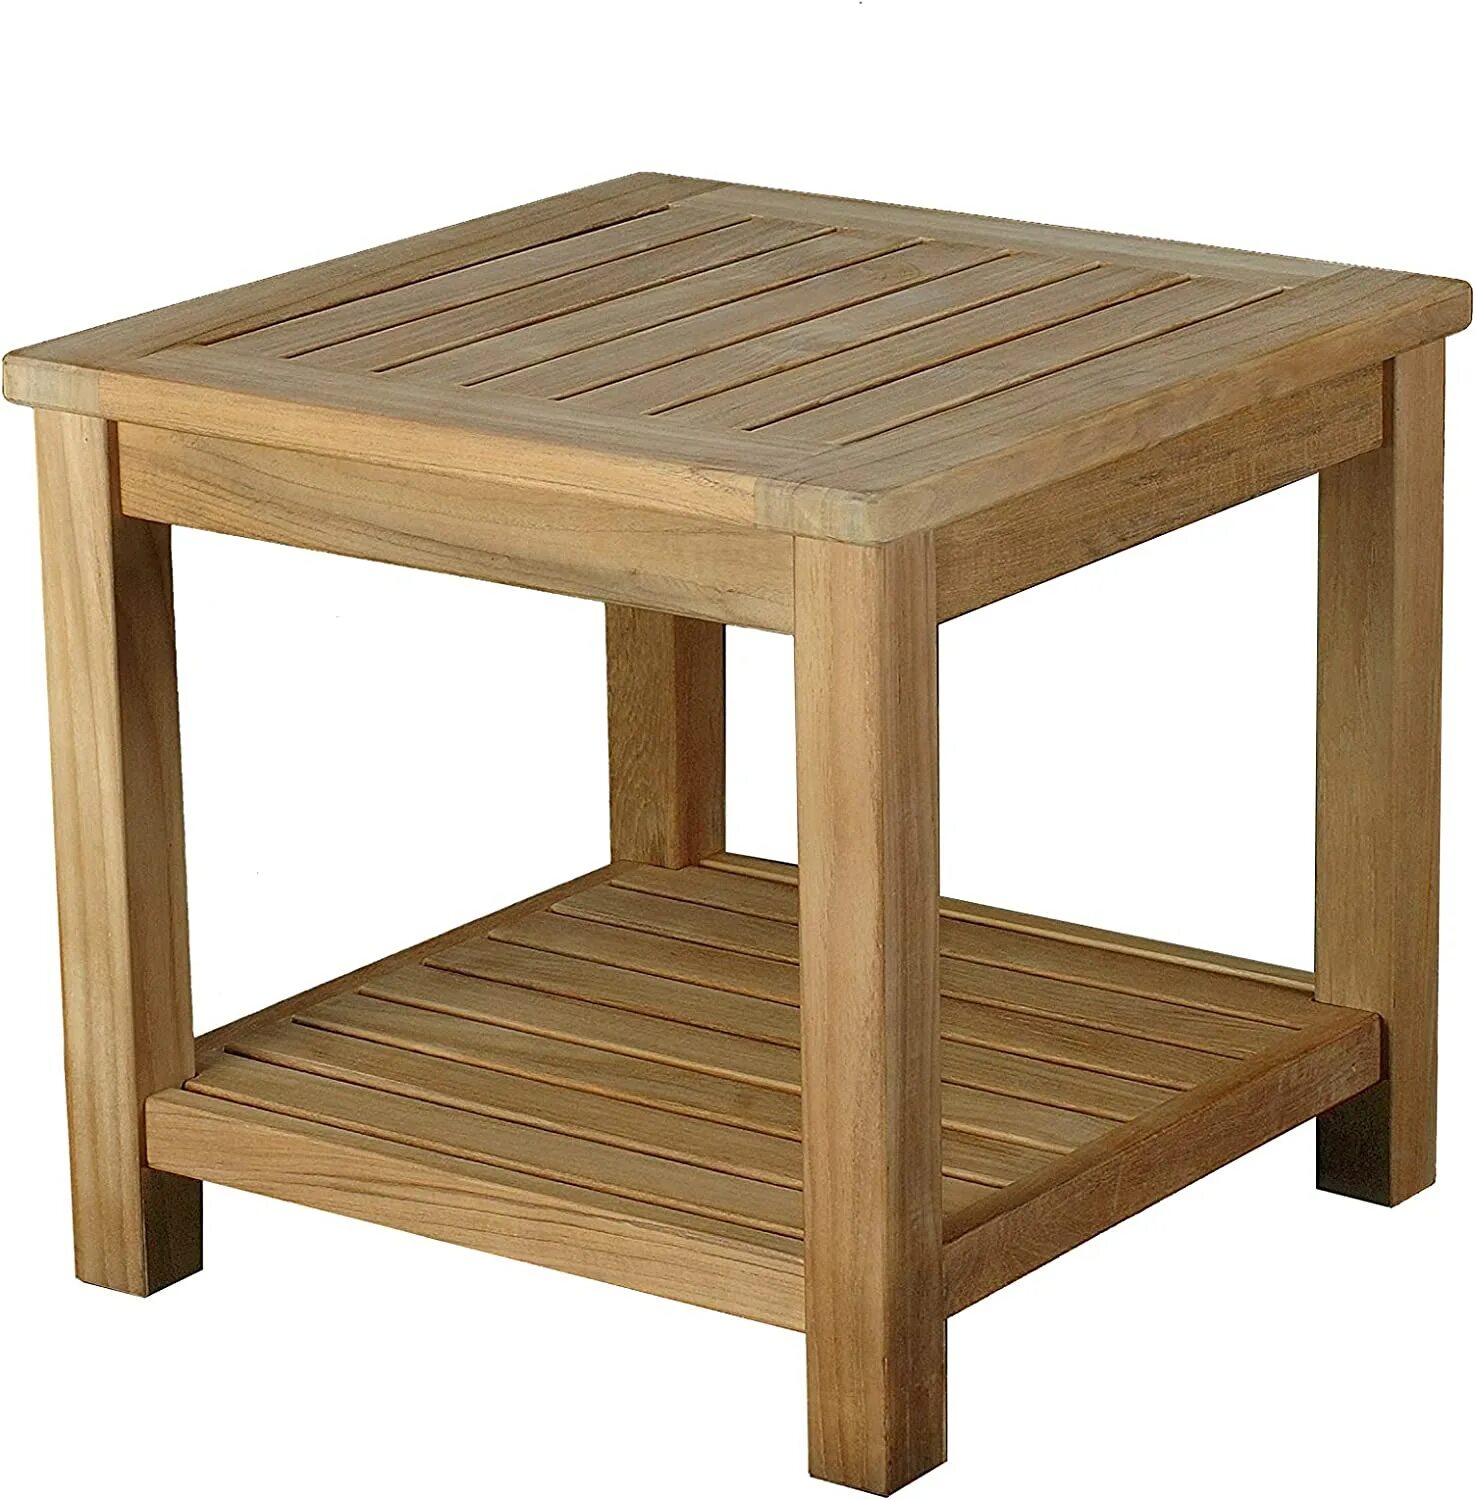 Стол 50 см высота. Столик для шезлонга из дерева. Деревянный шезлонг со столиком. Приставной деревянный столик для шезлонга. Стол тиковый садовый.